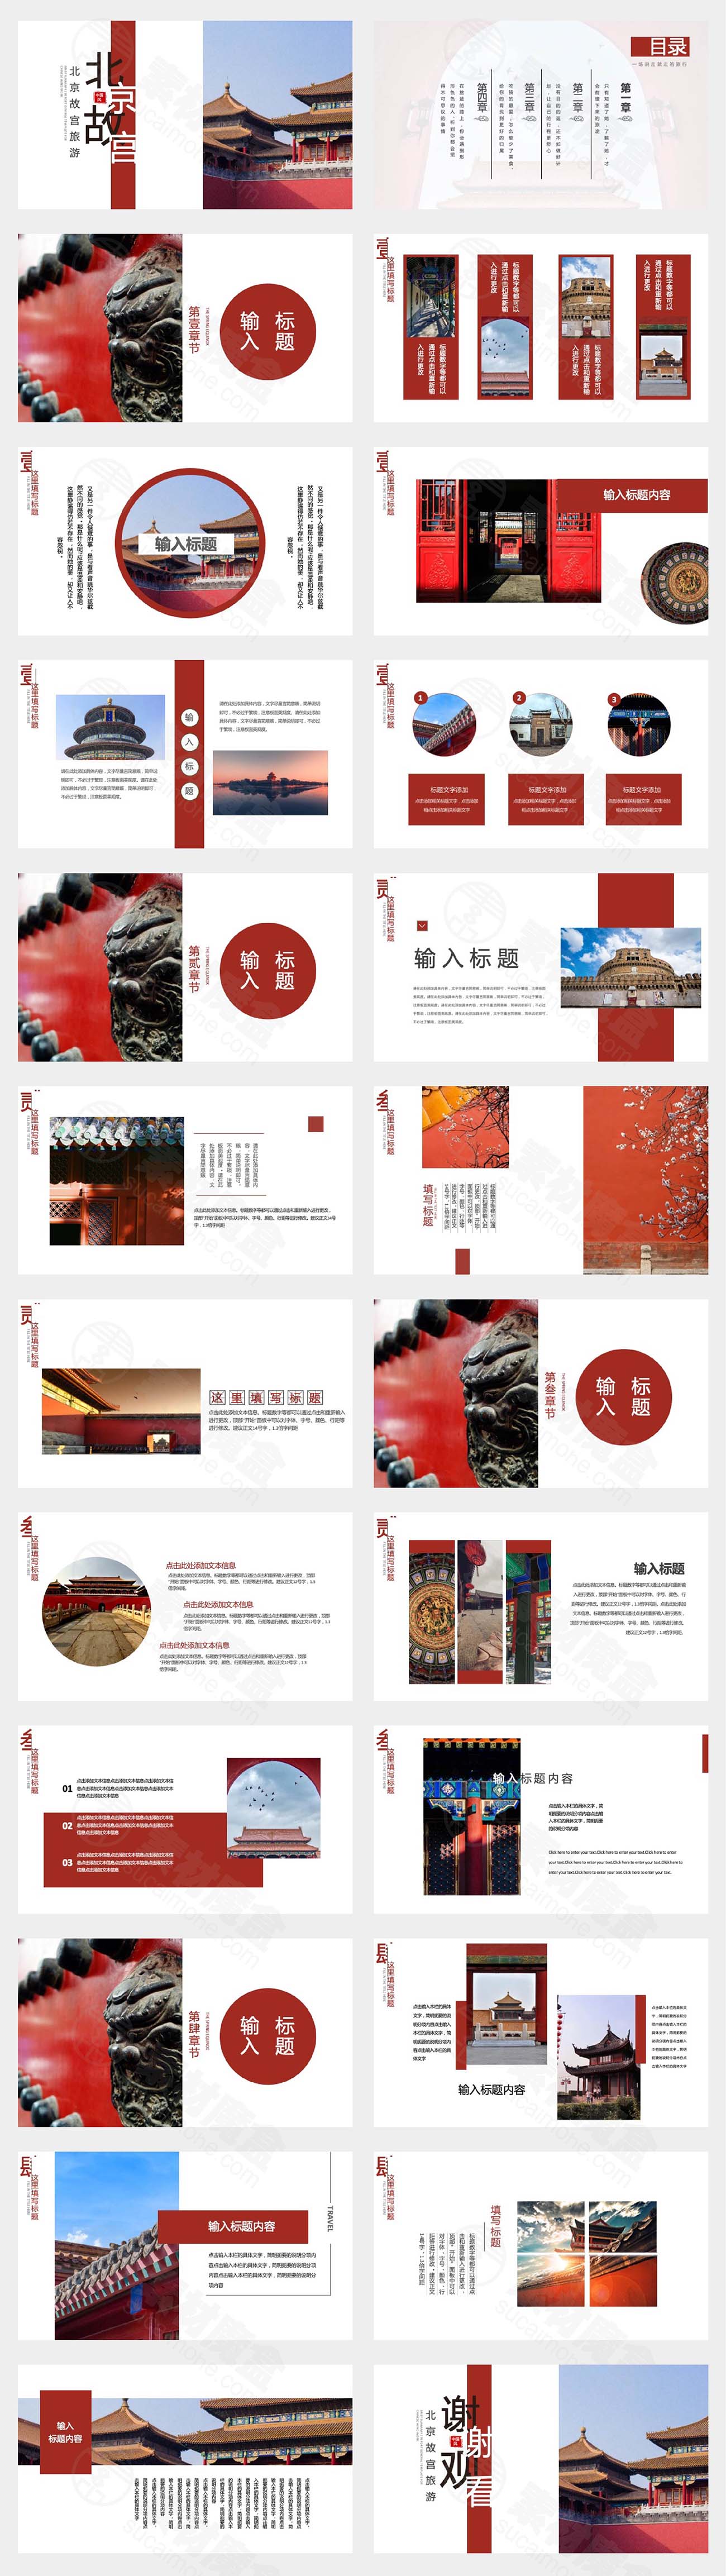 北京故宫旅游相册PPT模板